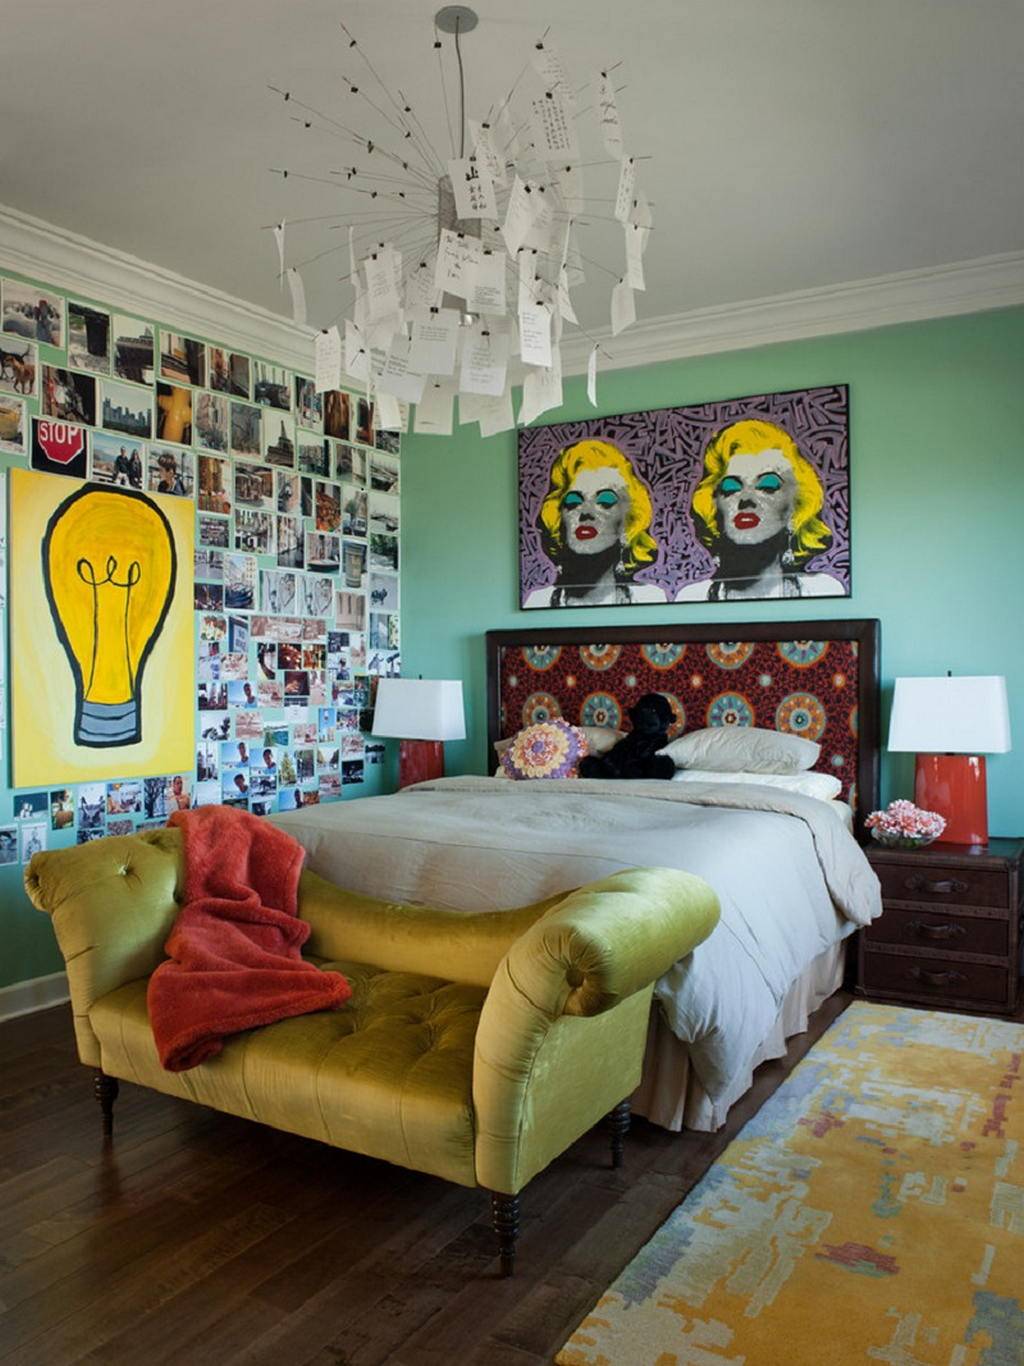 Bedroom pop. Квартира в стиле Энди Уорхола. Комната в стиле Энди Уорхола. Стиль поп-арт в интерьере. Спальня в стиле поп арт.